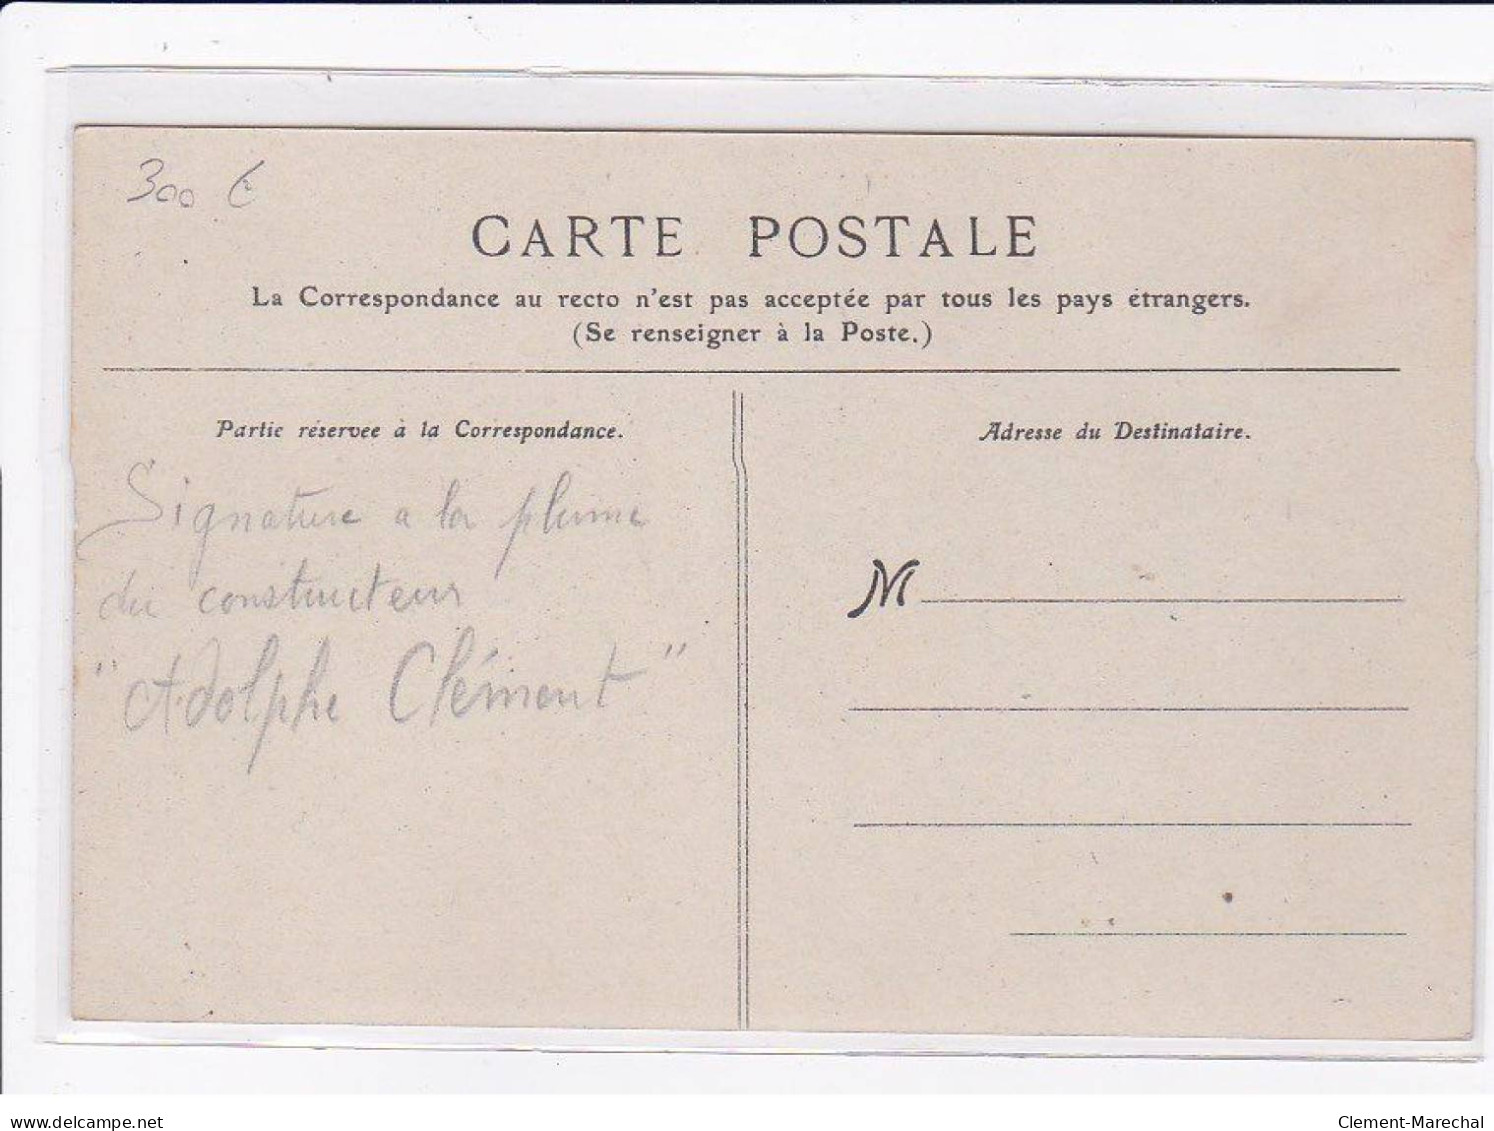 AVIATION : BALLON - Autographe D' Adolphe CLEMENT (constructeur CLEMENT-BAYARD) Raide Paris Compiegne- Bon état - Aeronaves